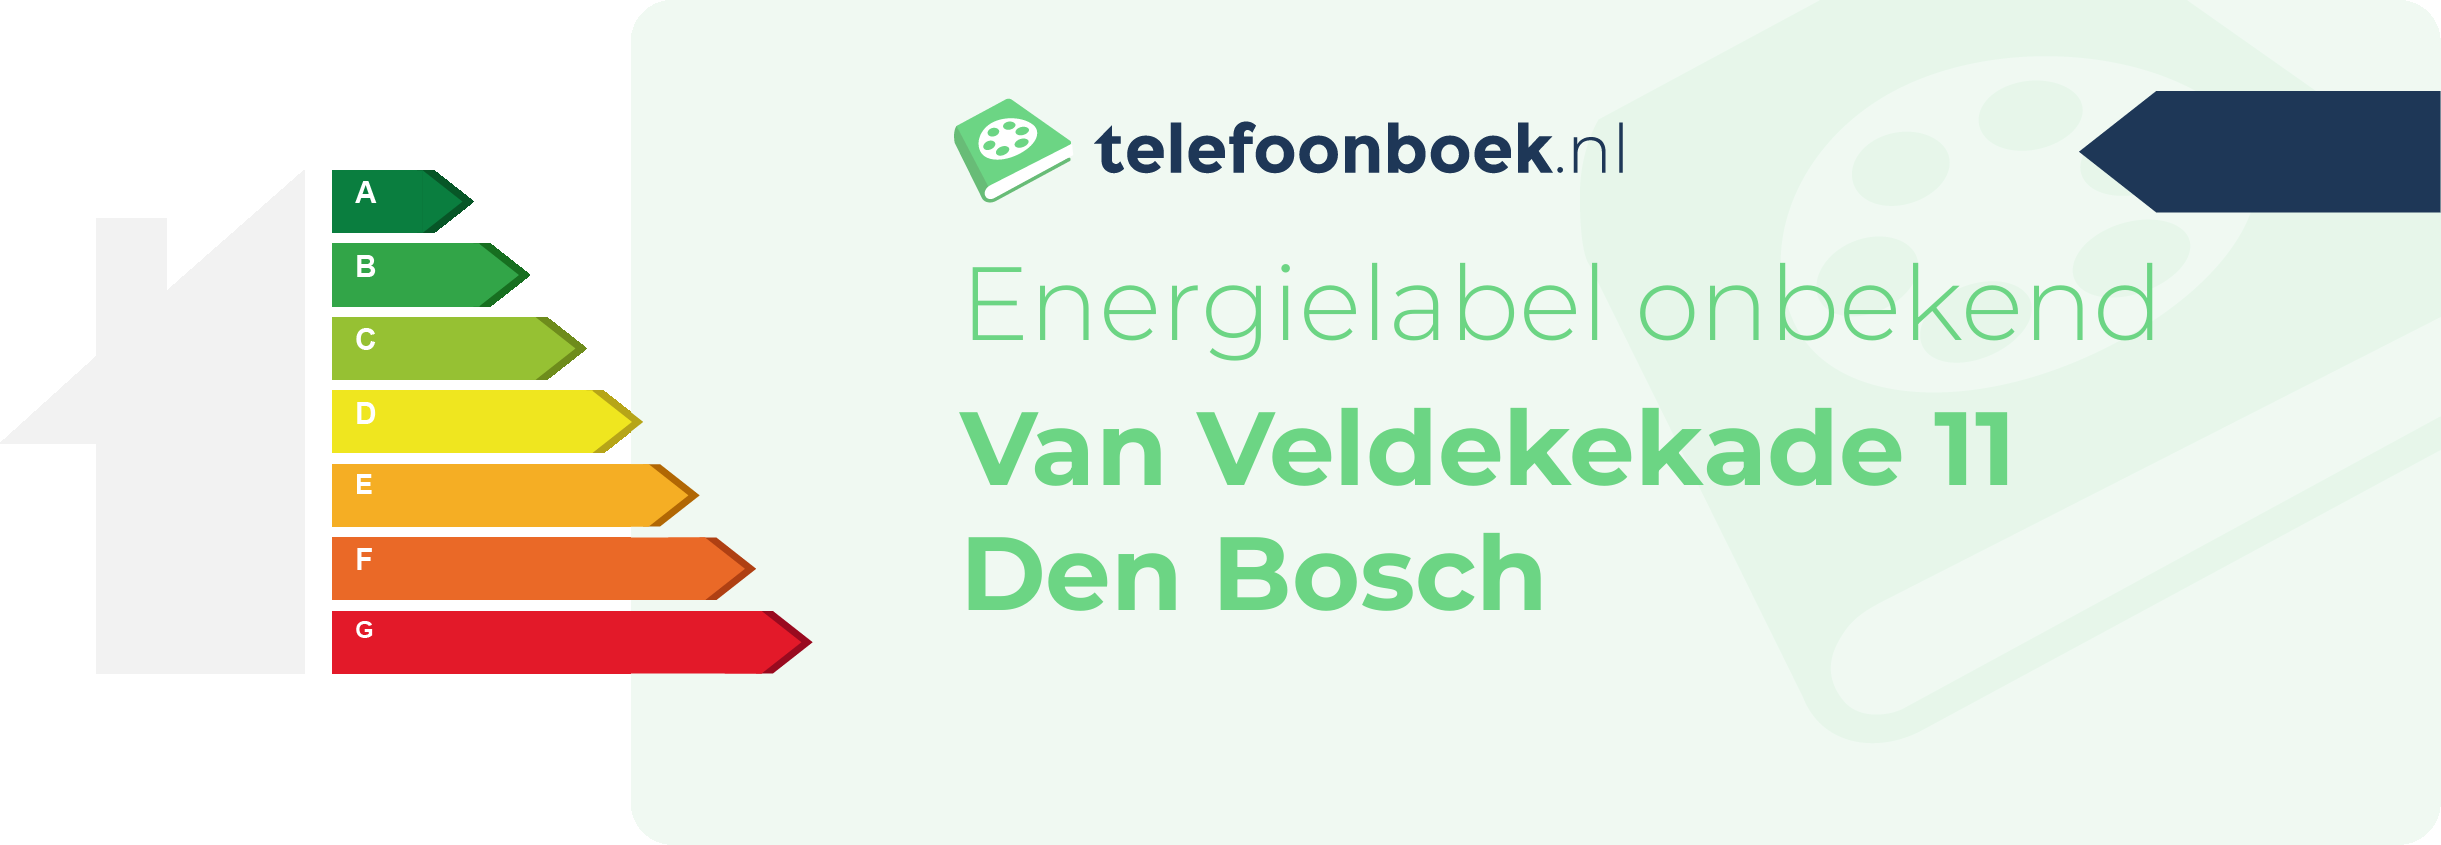 Energielabel Van Veldekekade 11 Den Bosch